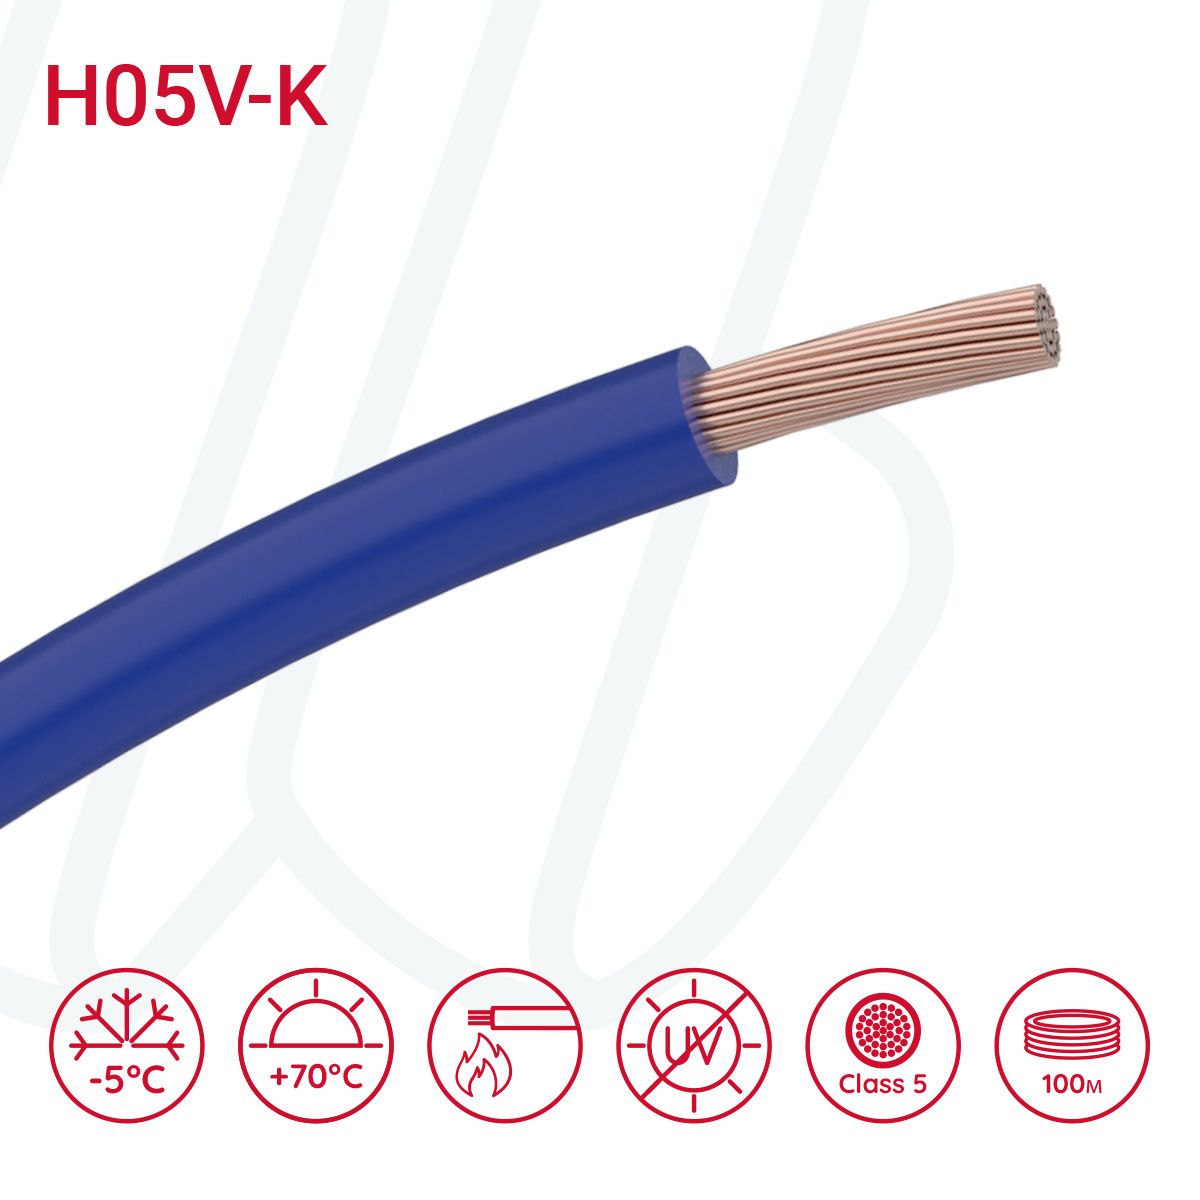 Провід монтажний гнучкий H05V-K 1 мм² ультрамариновий синій RAL 5002, 01, 1.0